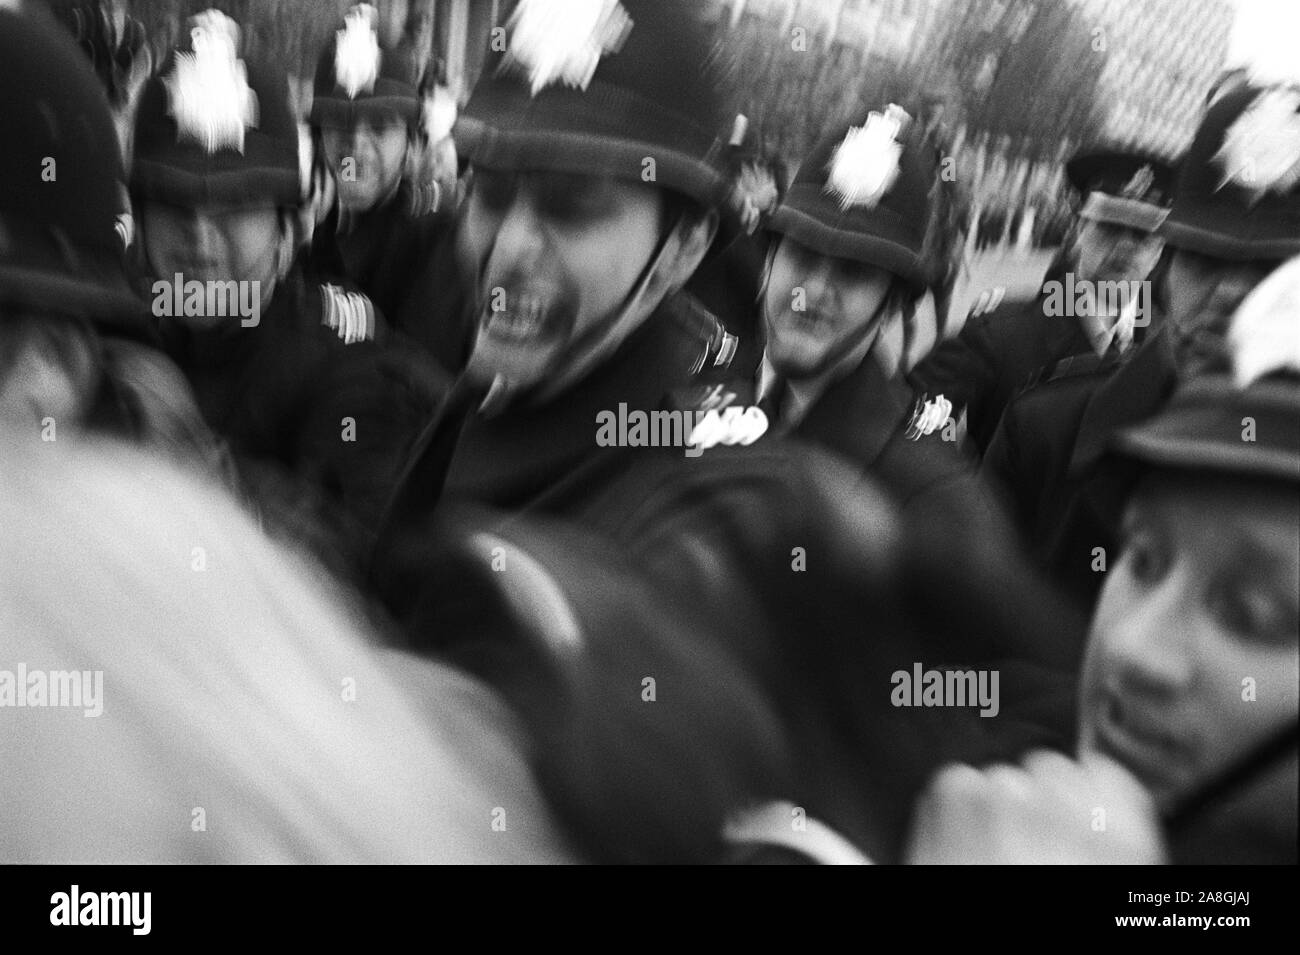 Polizia alla manifestazione di guerra contro il Vietnam - i moti di Grosvenor Square - fuori dall'ambasciata americana, Grosvenor Square, Londra, Inghilterra. 17 marzo 1968.1960s poliziotti del Regno Unito che afferrano un manifestante. HOMER SYKES Foto Stock